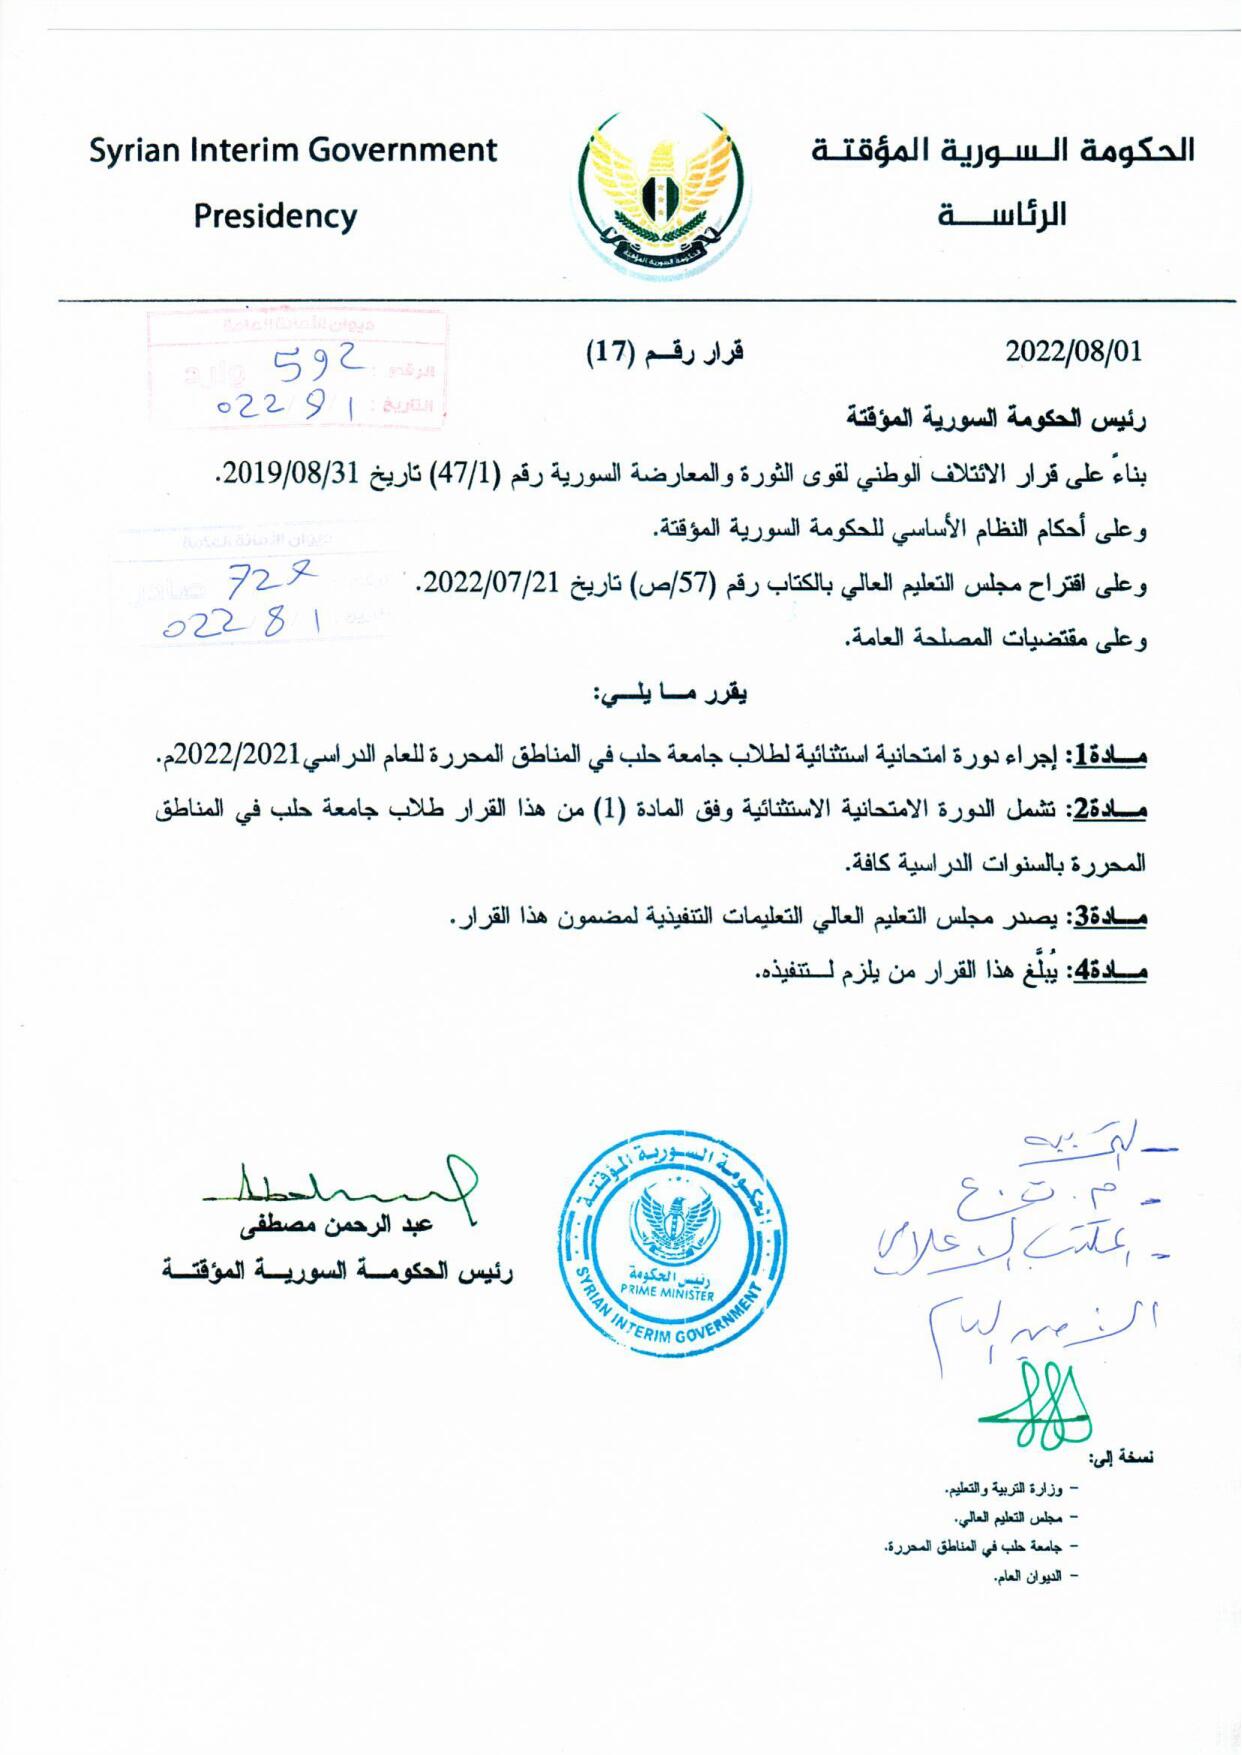 الحكومة السورية المؤقتة تعلن عن دورة امتحانات استثنائية في "جامعة حلب الحرة"